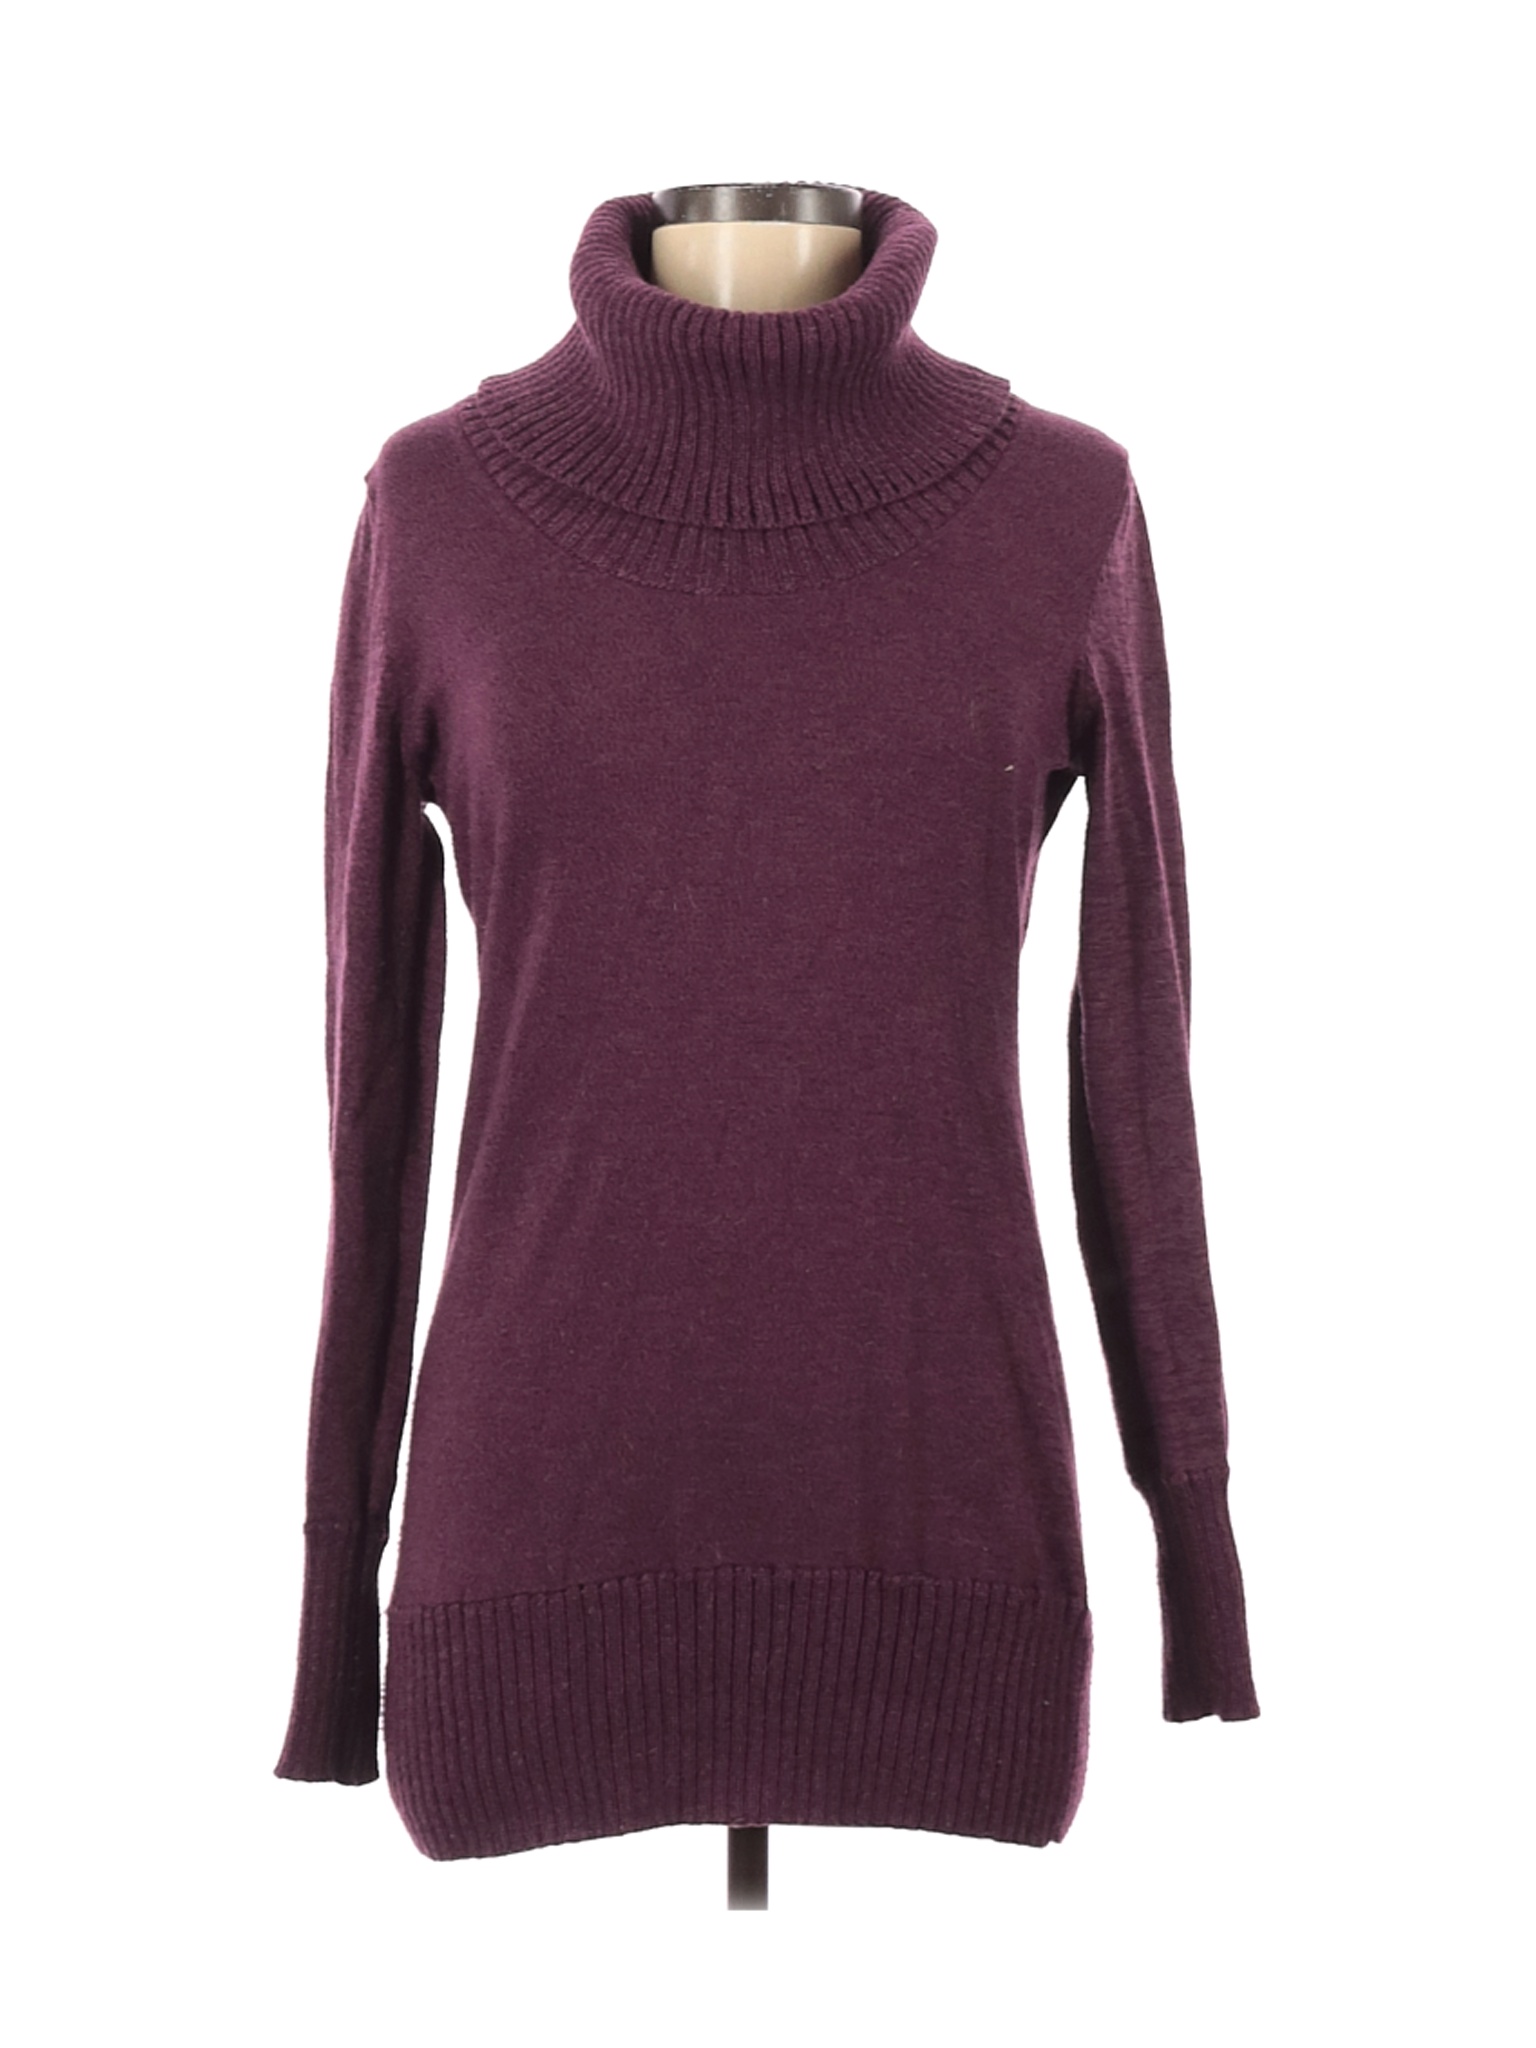 The Limited Women Purple Turtleneck Sweater M | eBay